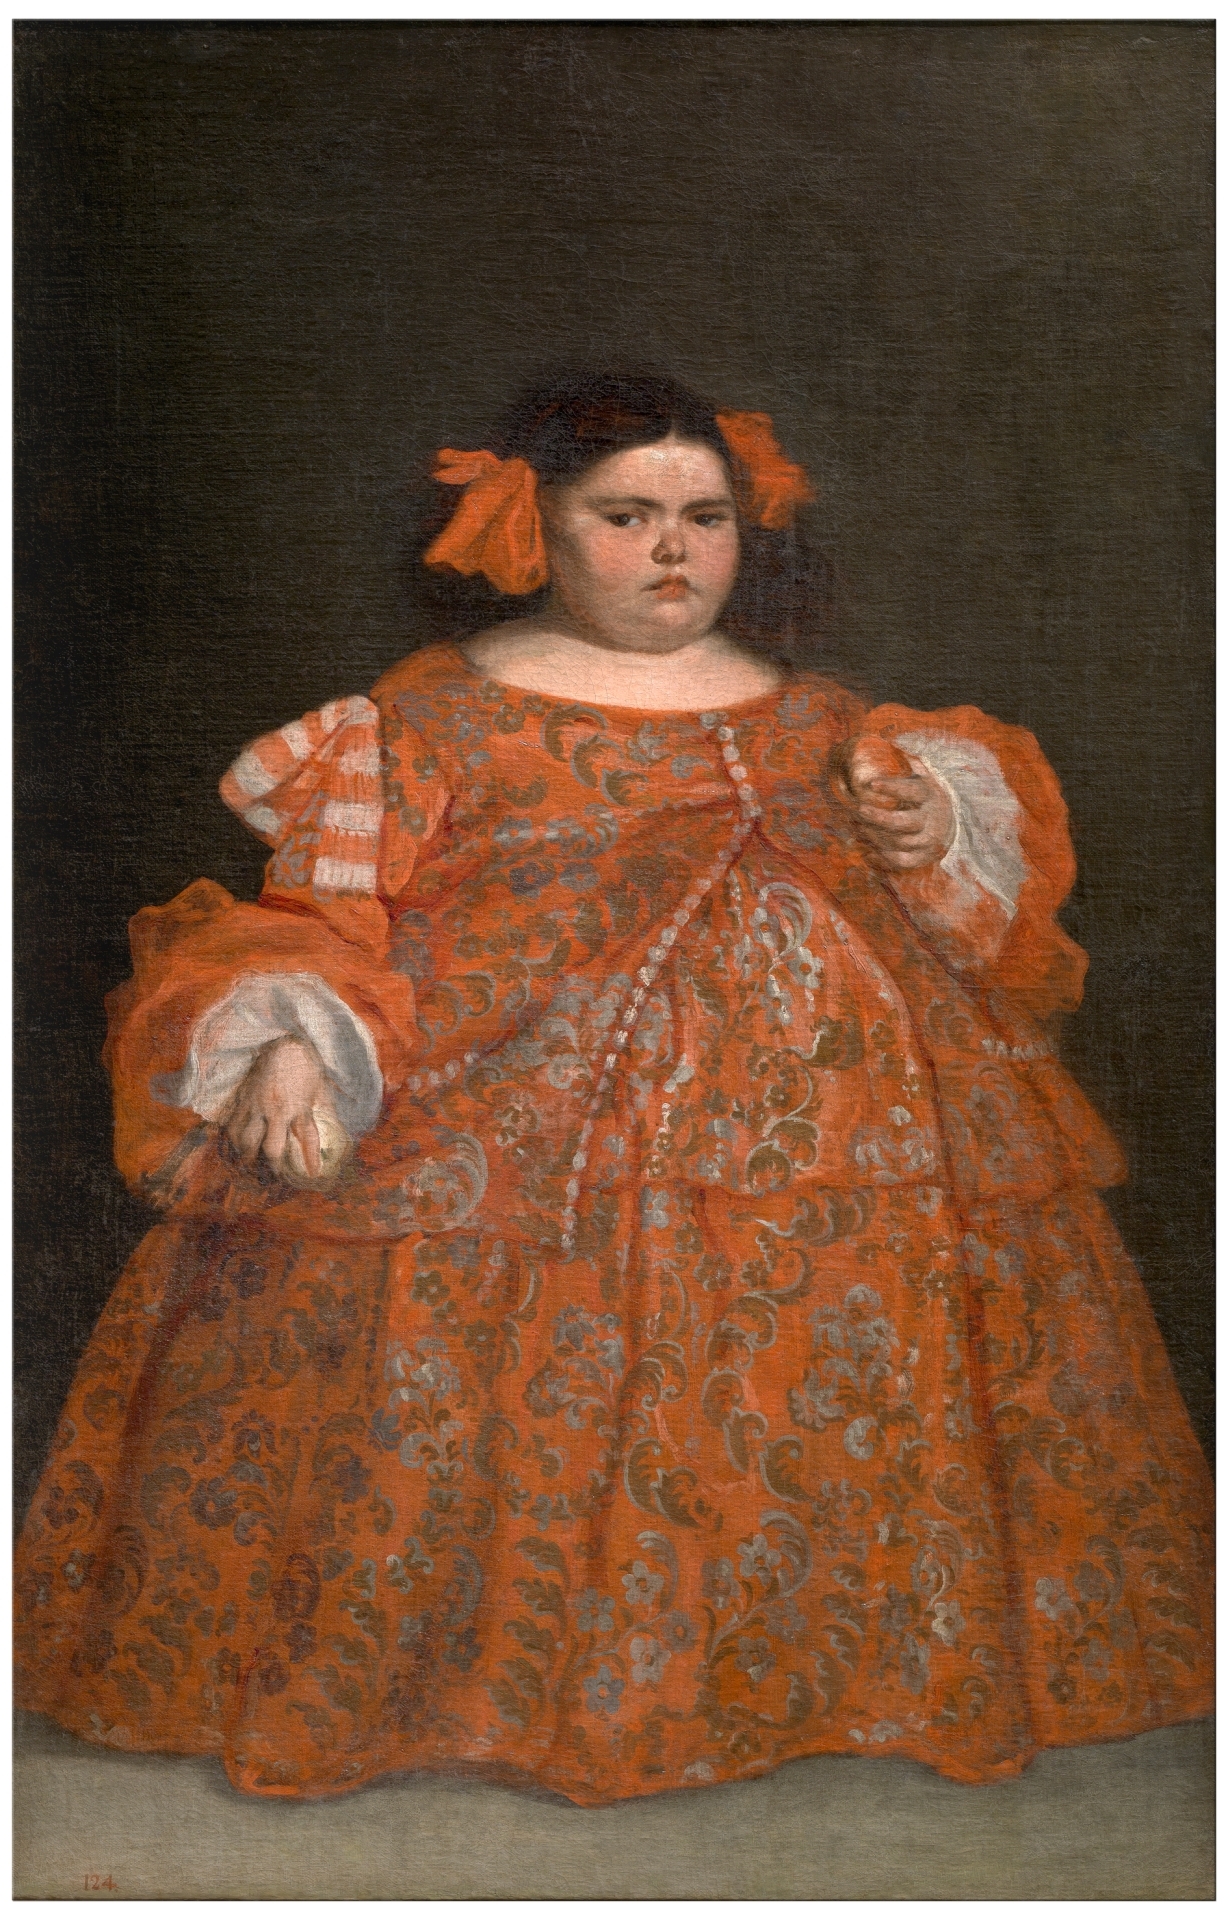 穿着衣服的尤金妮娅•马丁内斯•瓦列霍 by 胡安 · 卡雷诺 · 德 · 米兰达 - 约1680年 - 165 x 107厘米 